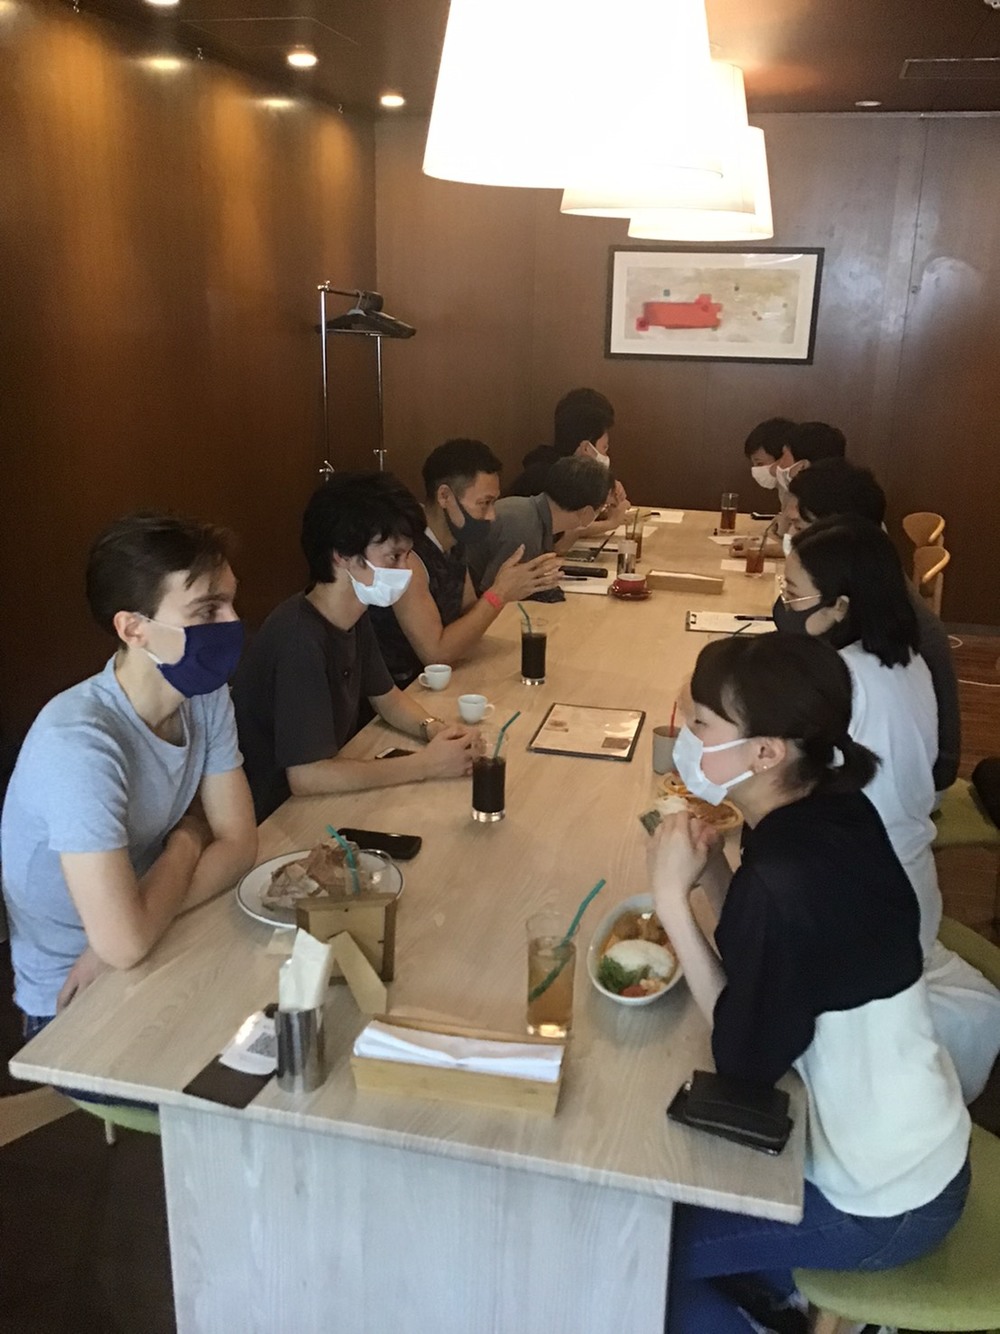 異業種交流会@中目黒にあるお洒落なカフェ/ Business networking & social Meetup @ Nakameguro